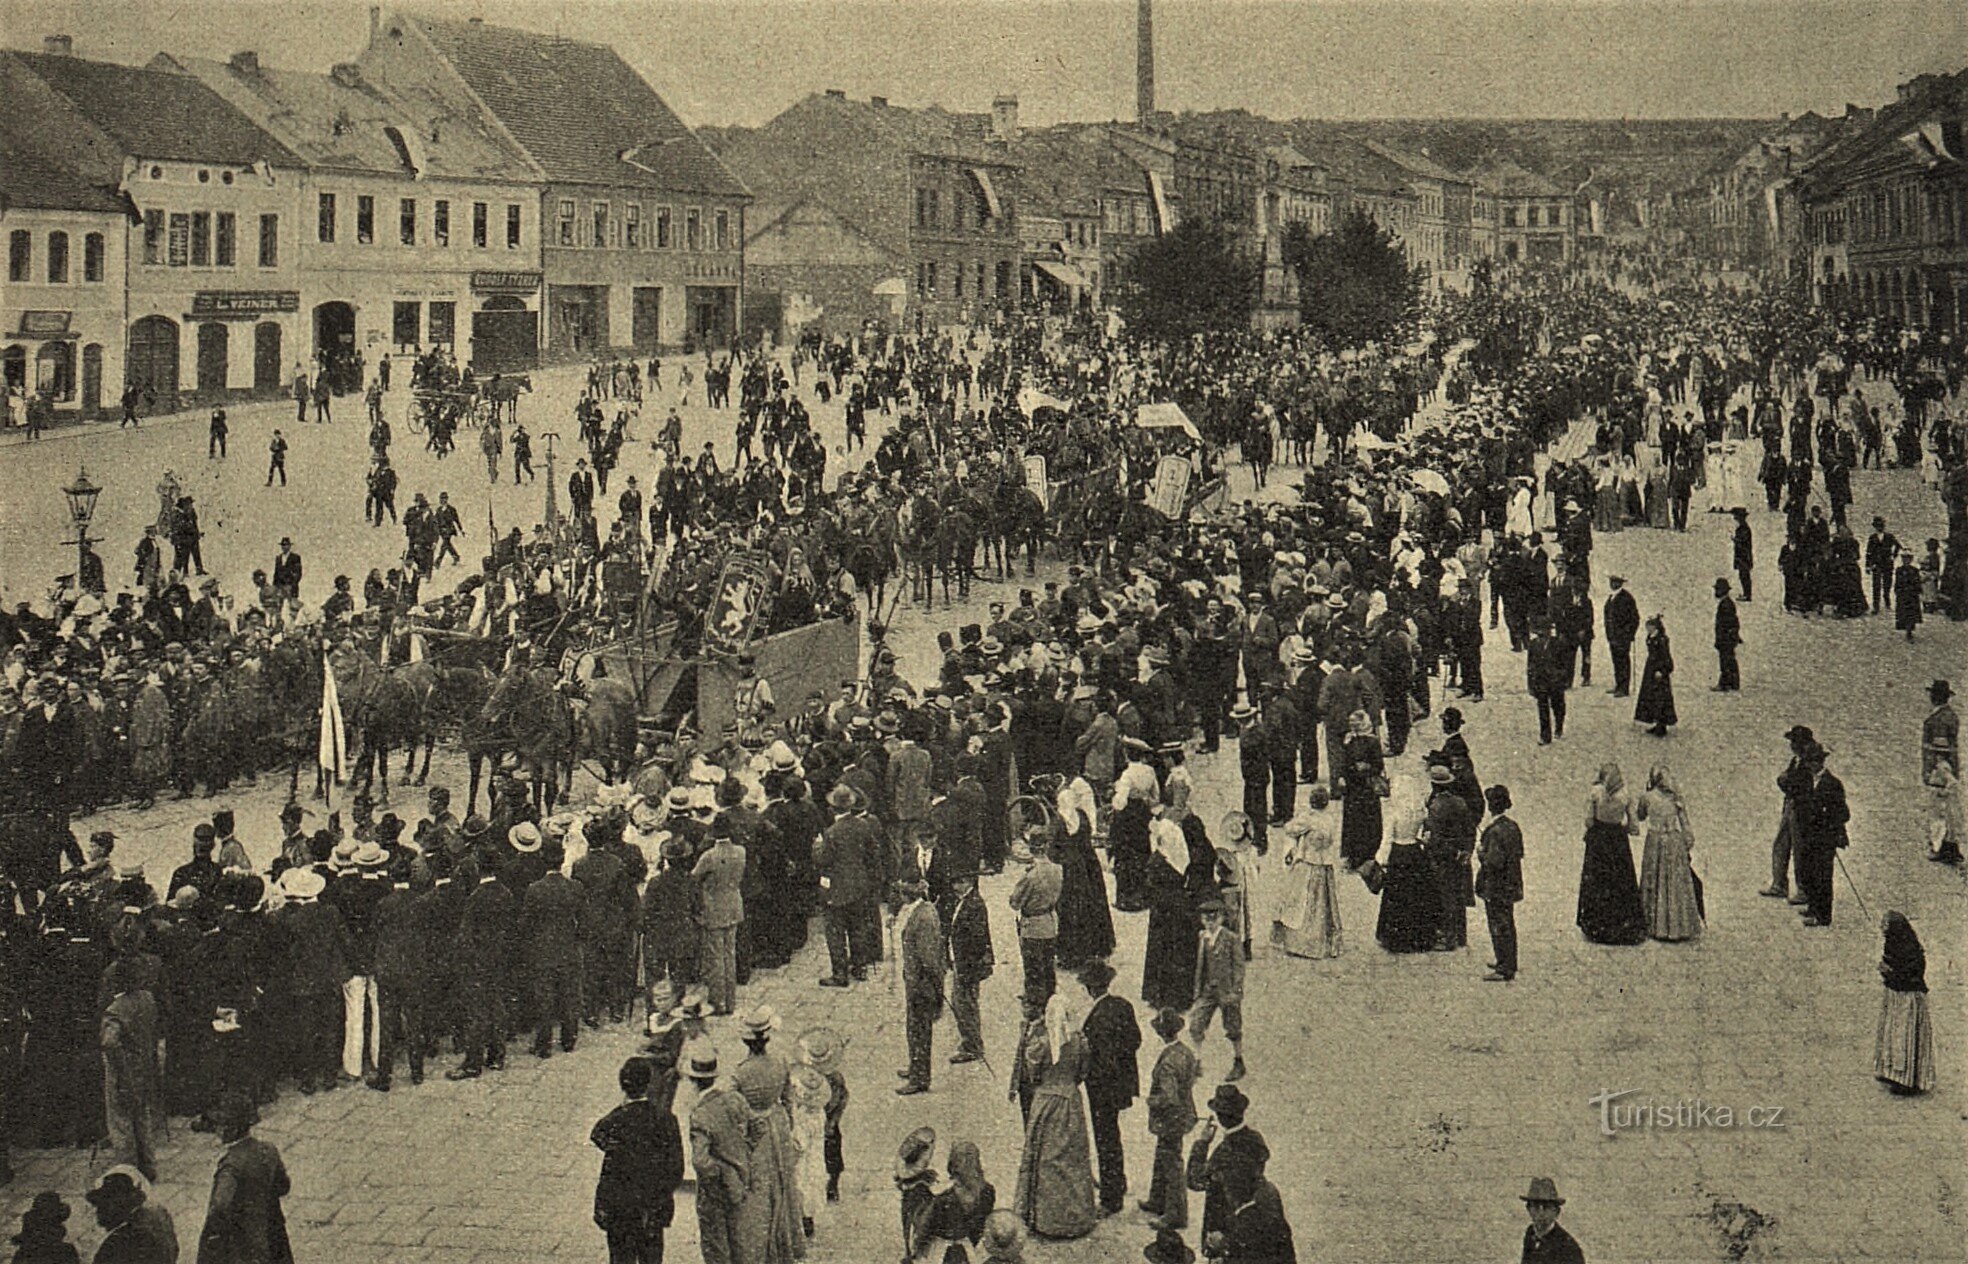 1903 年在 Hořice 举行的胡斯派庆祝活动